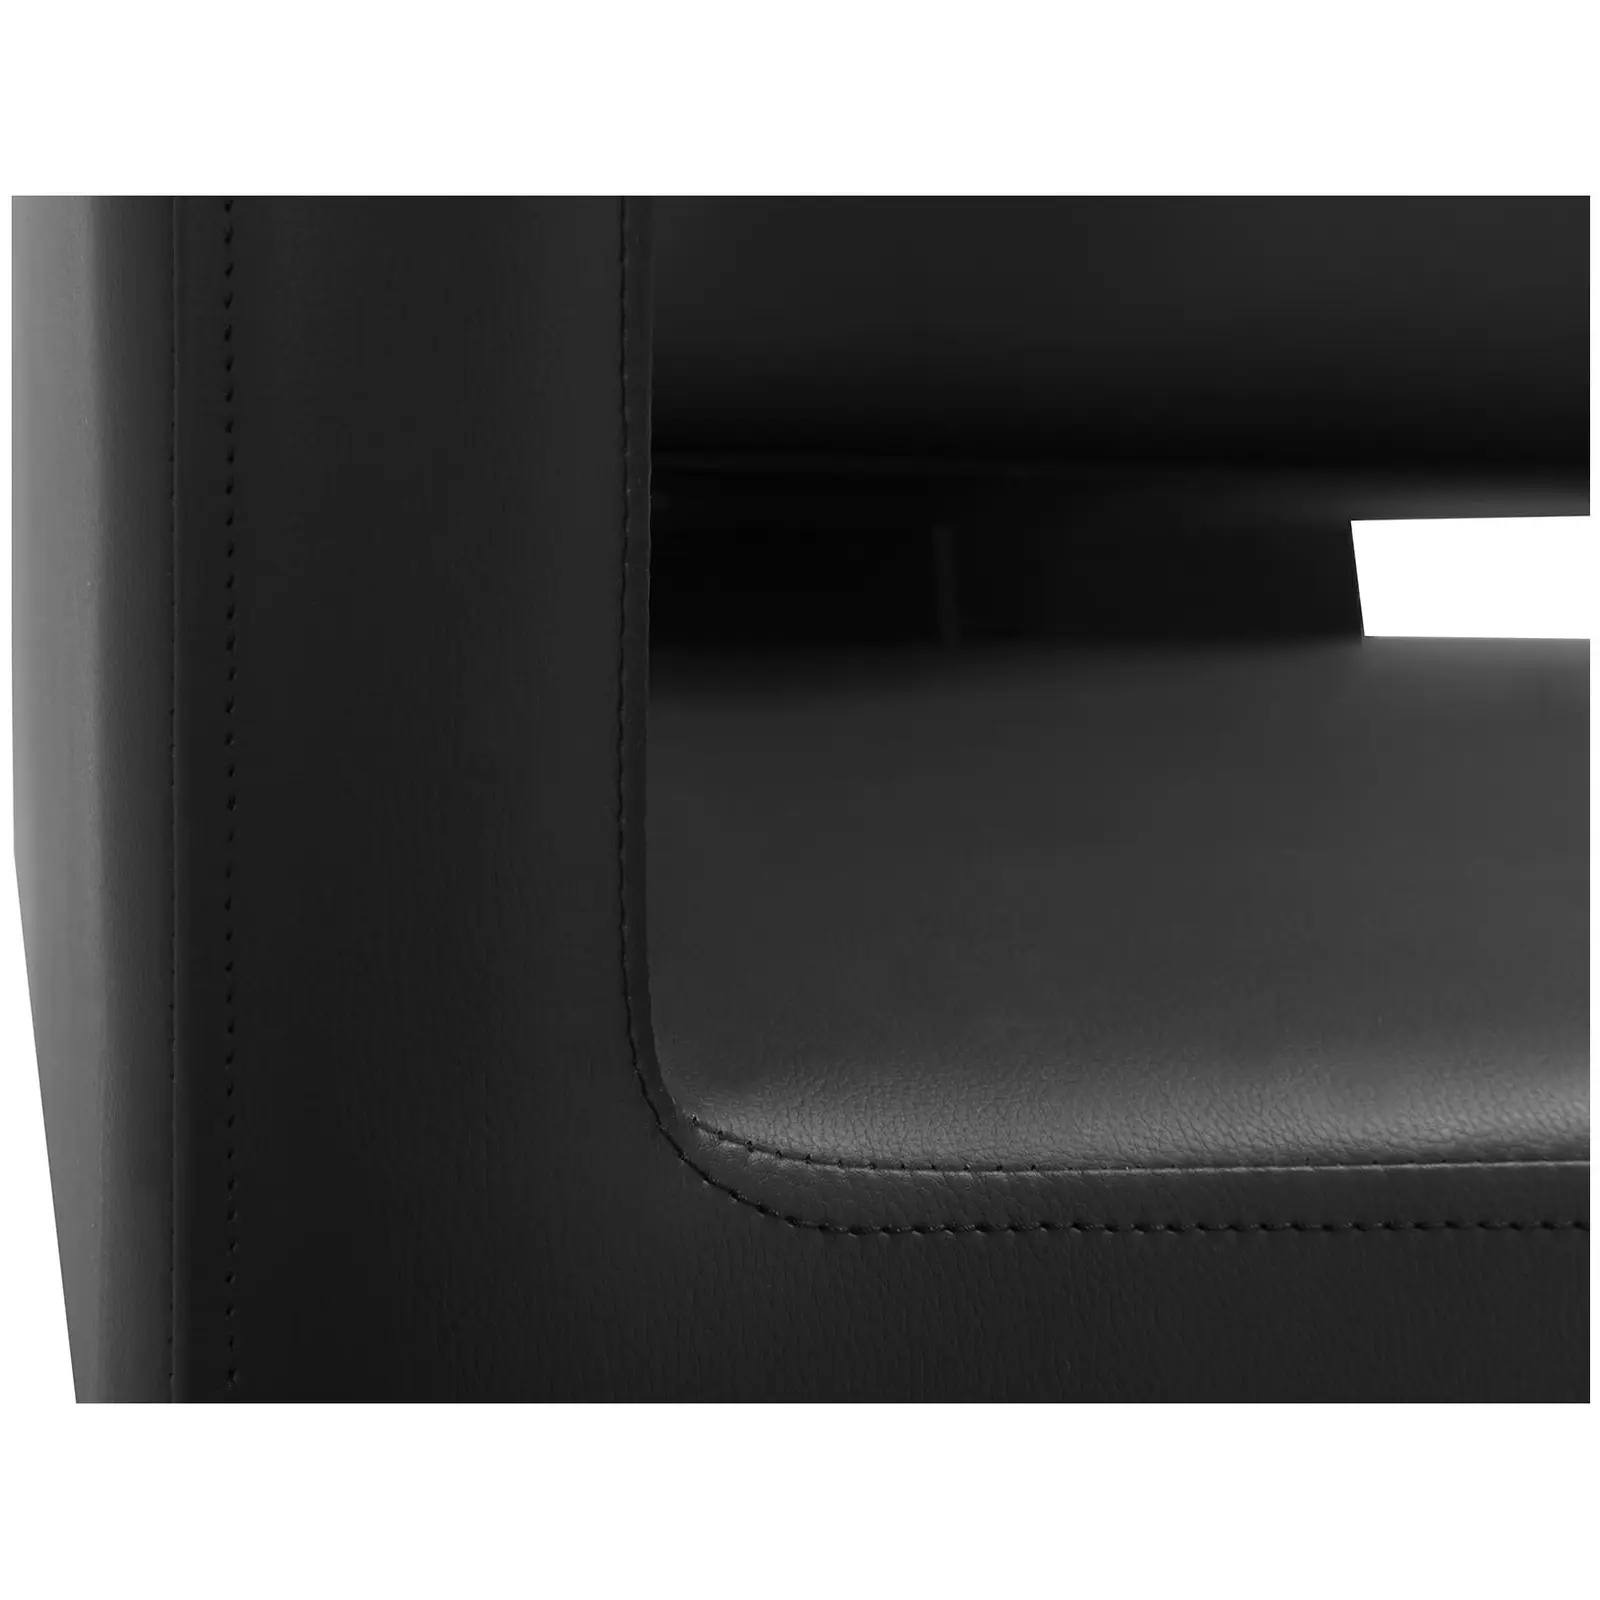 Kampaamon pesupaikka tuolilla - 600 x 505 mm -  musta